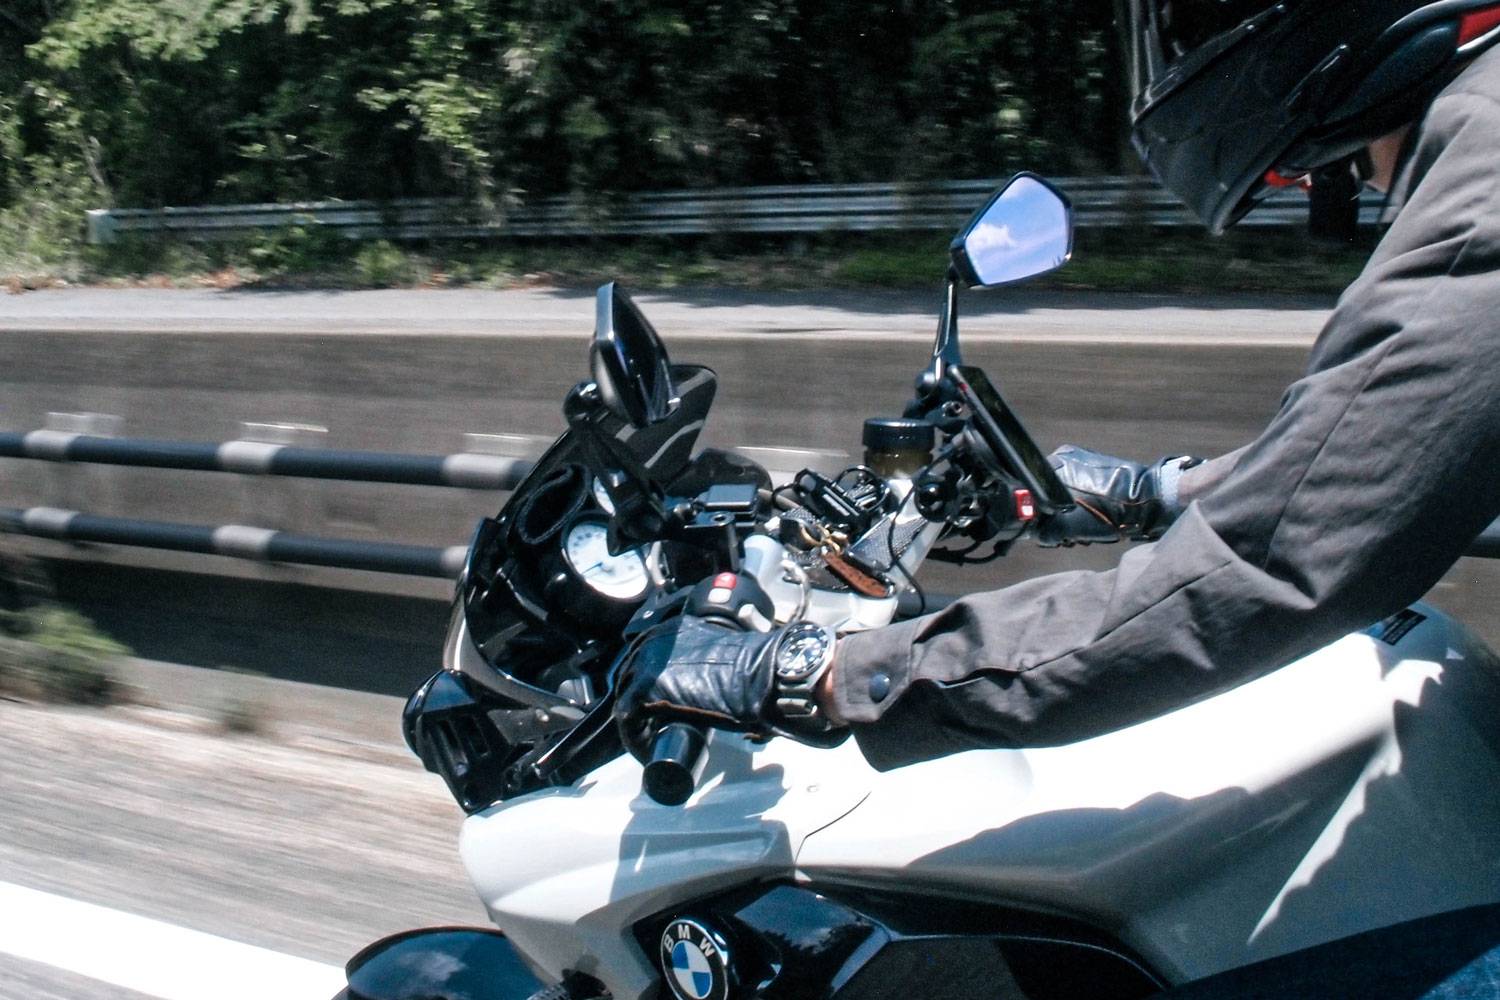 活動報告 GS1200SS K1300R ツーリング モーターサイクル バイク ダム touring motorcycle bike